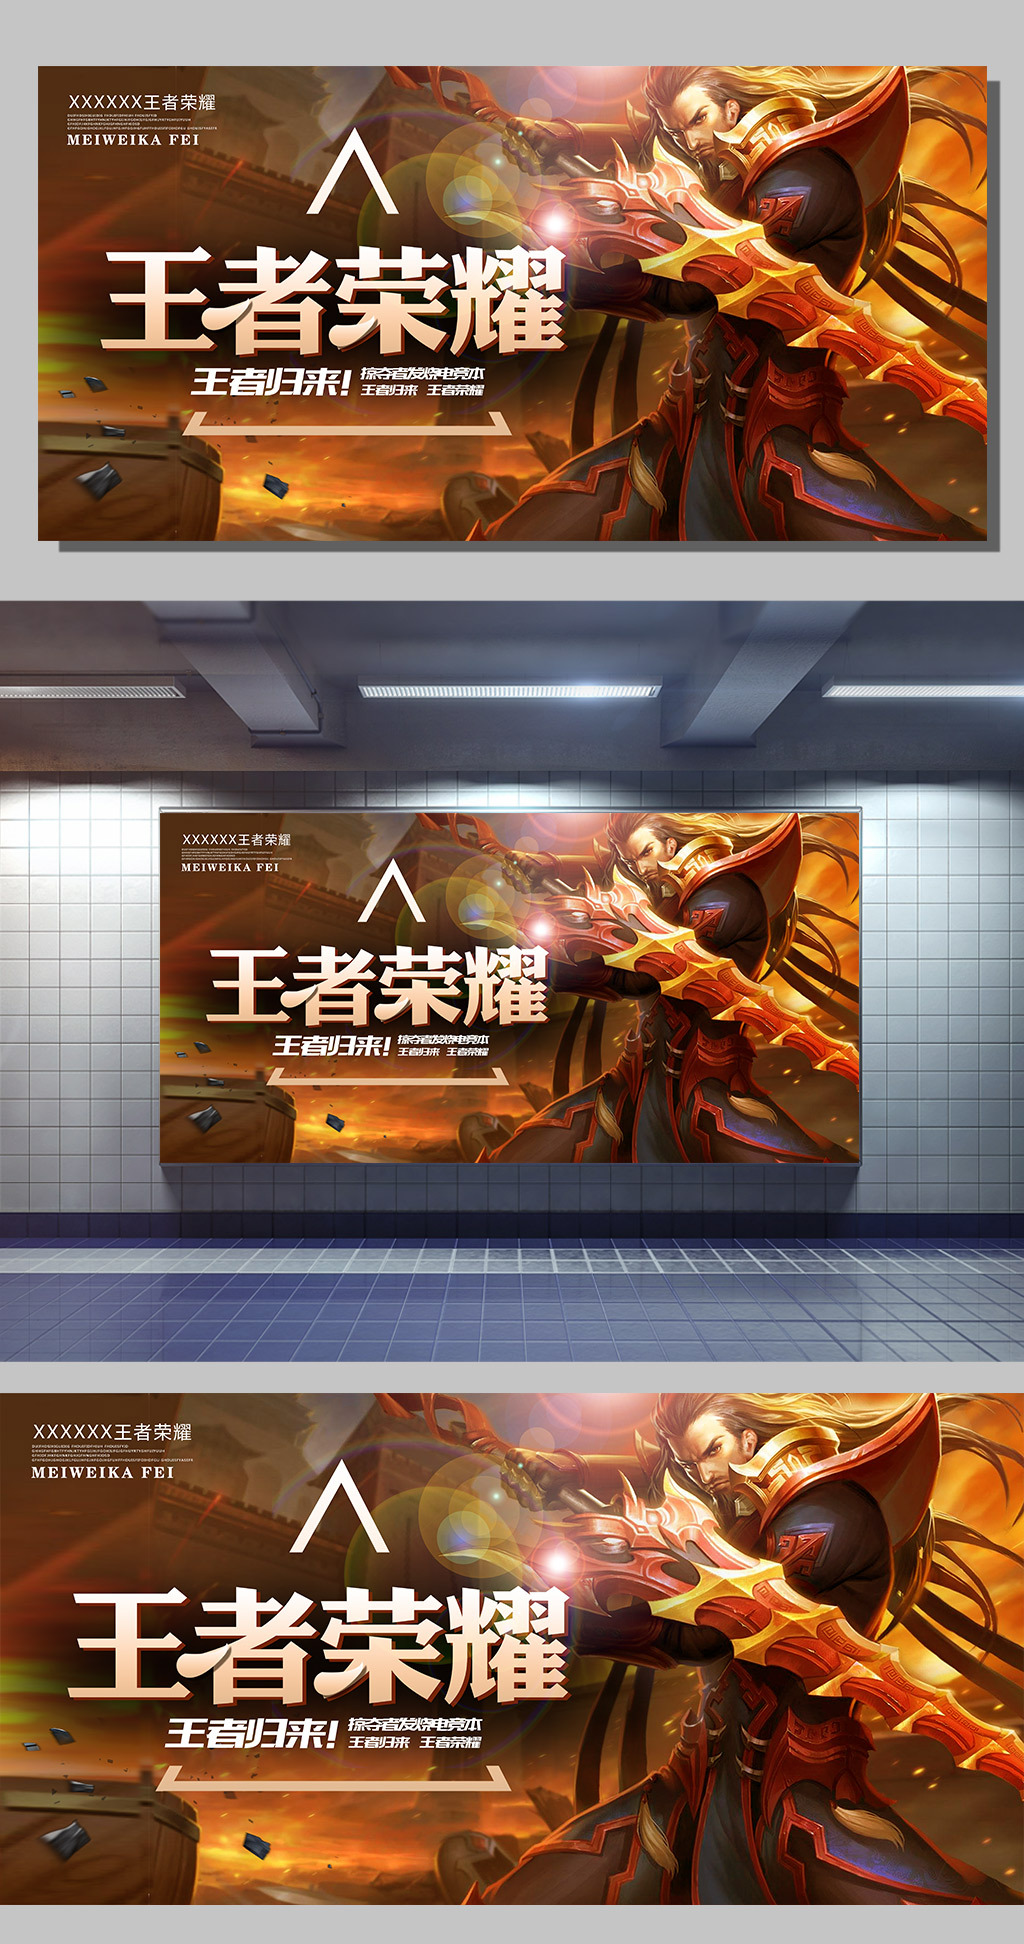 王者荣耀游戏展板设计下载图片素材_高清PSD